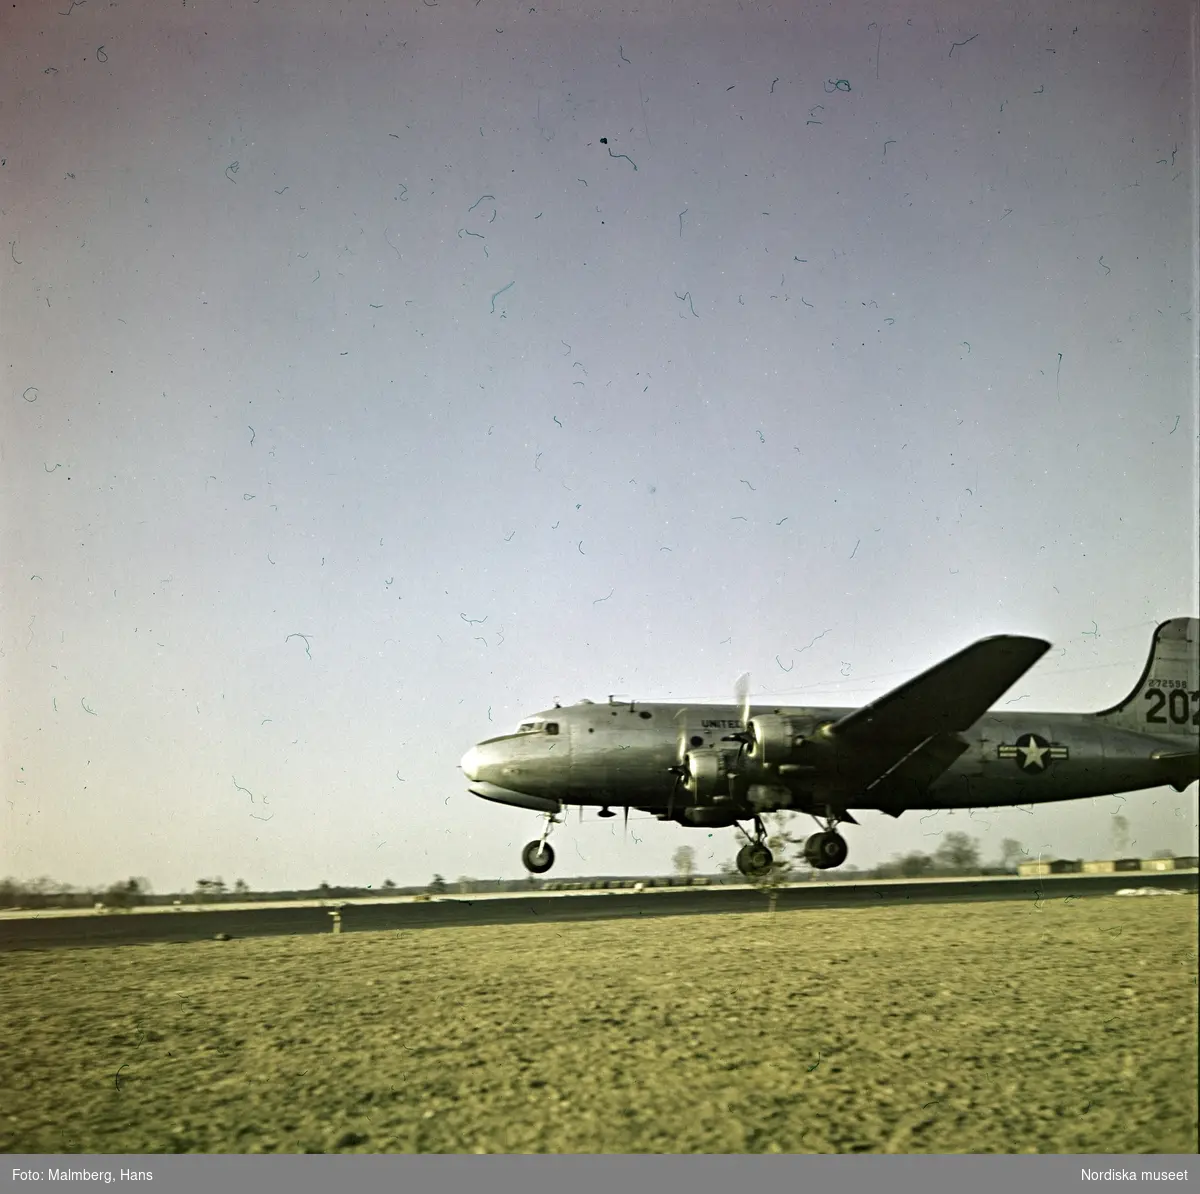 Berlinblockaden. Ett amerikanskt transportflygplan av typen Douglas C-54 Skymaster landar på ett flygfält.